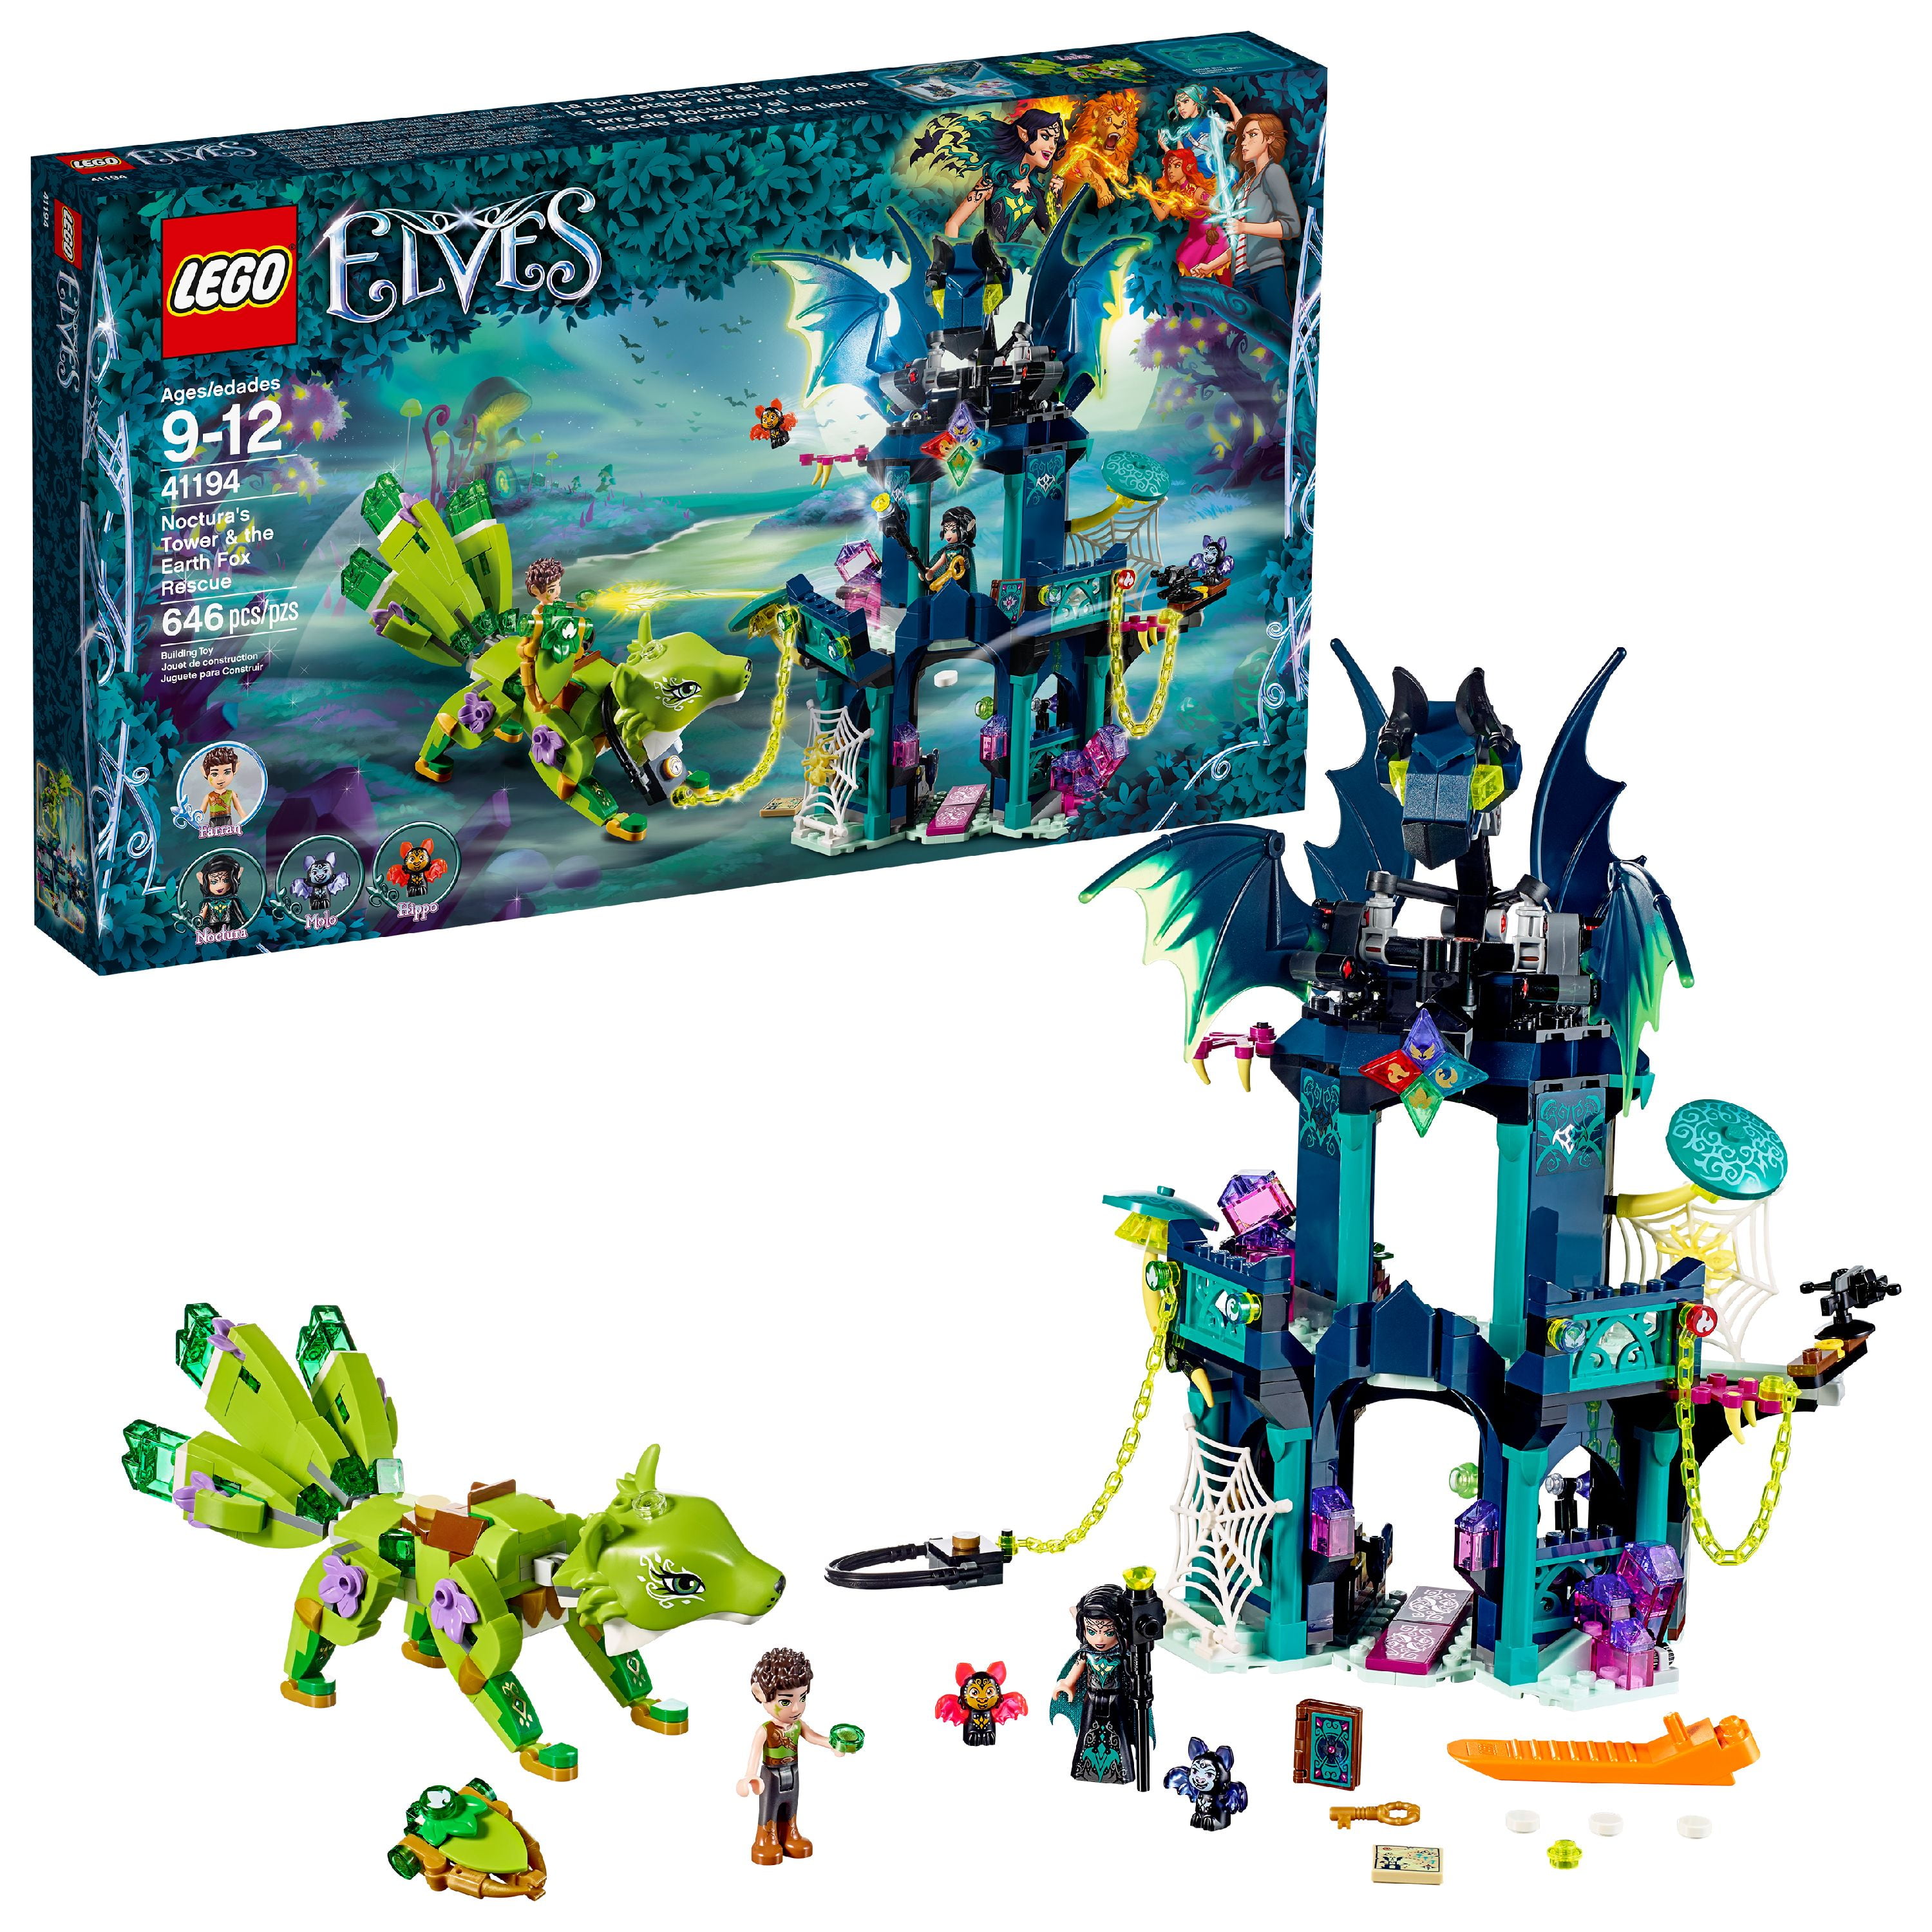 ELVES the Goblin King's Evil Dragon LEGO Building Blocks Bricks Toys Kids Gift